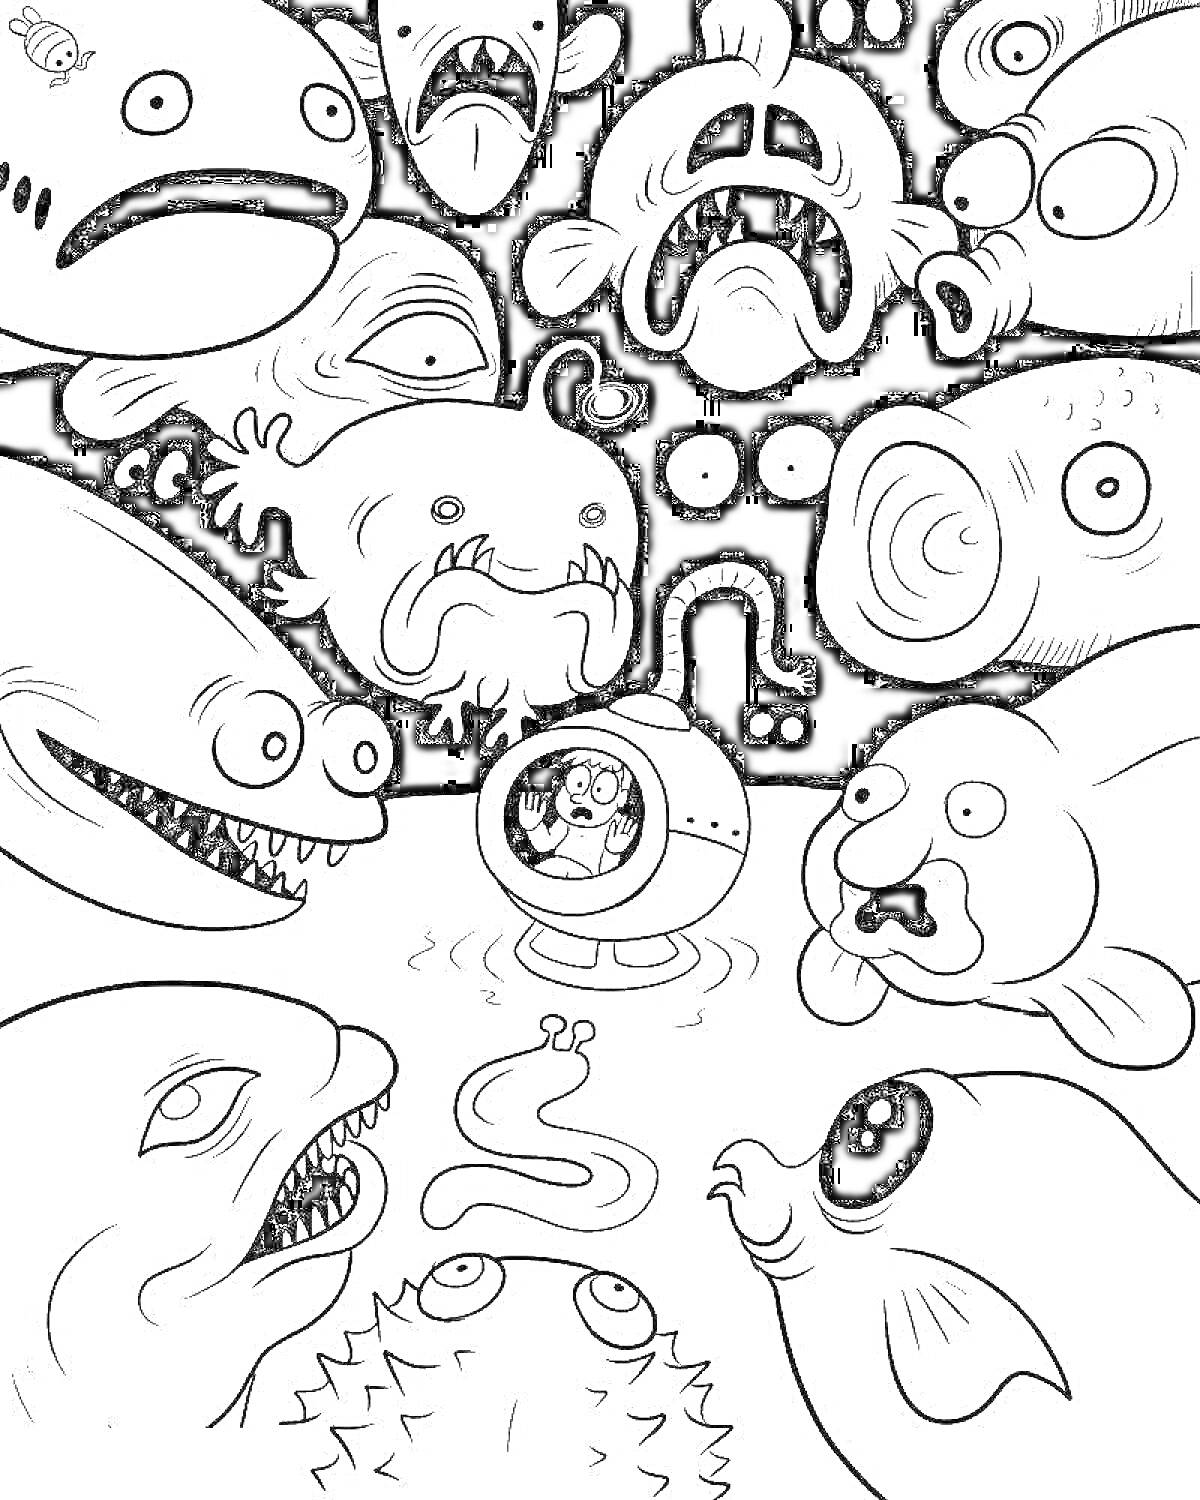 Раскраска Подводная экспедиция среди морских монстров (водолаз в батискафе, морские монстры, рыбы с острыми зубами, рыбы-шар, светящиеся рыбы, рыбояд)